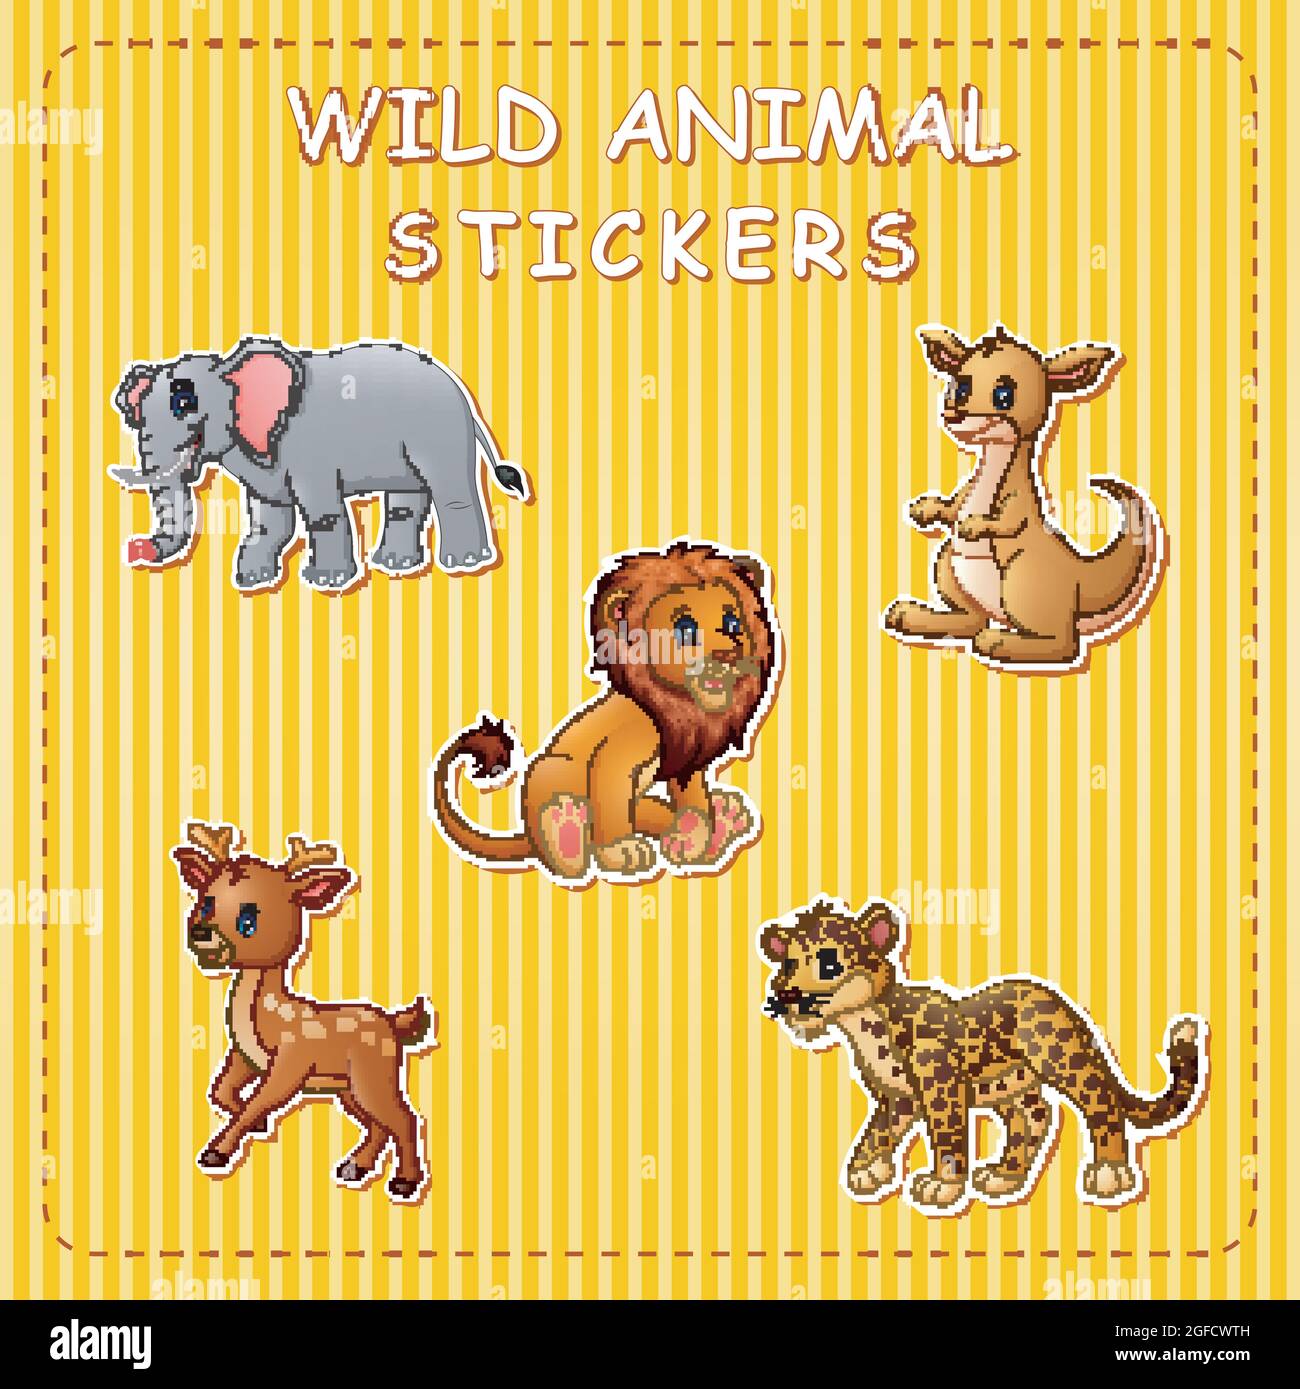 Illustration of cute cartoon wild animals on stickers Stock Vector